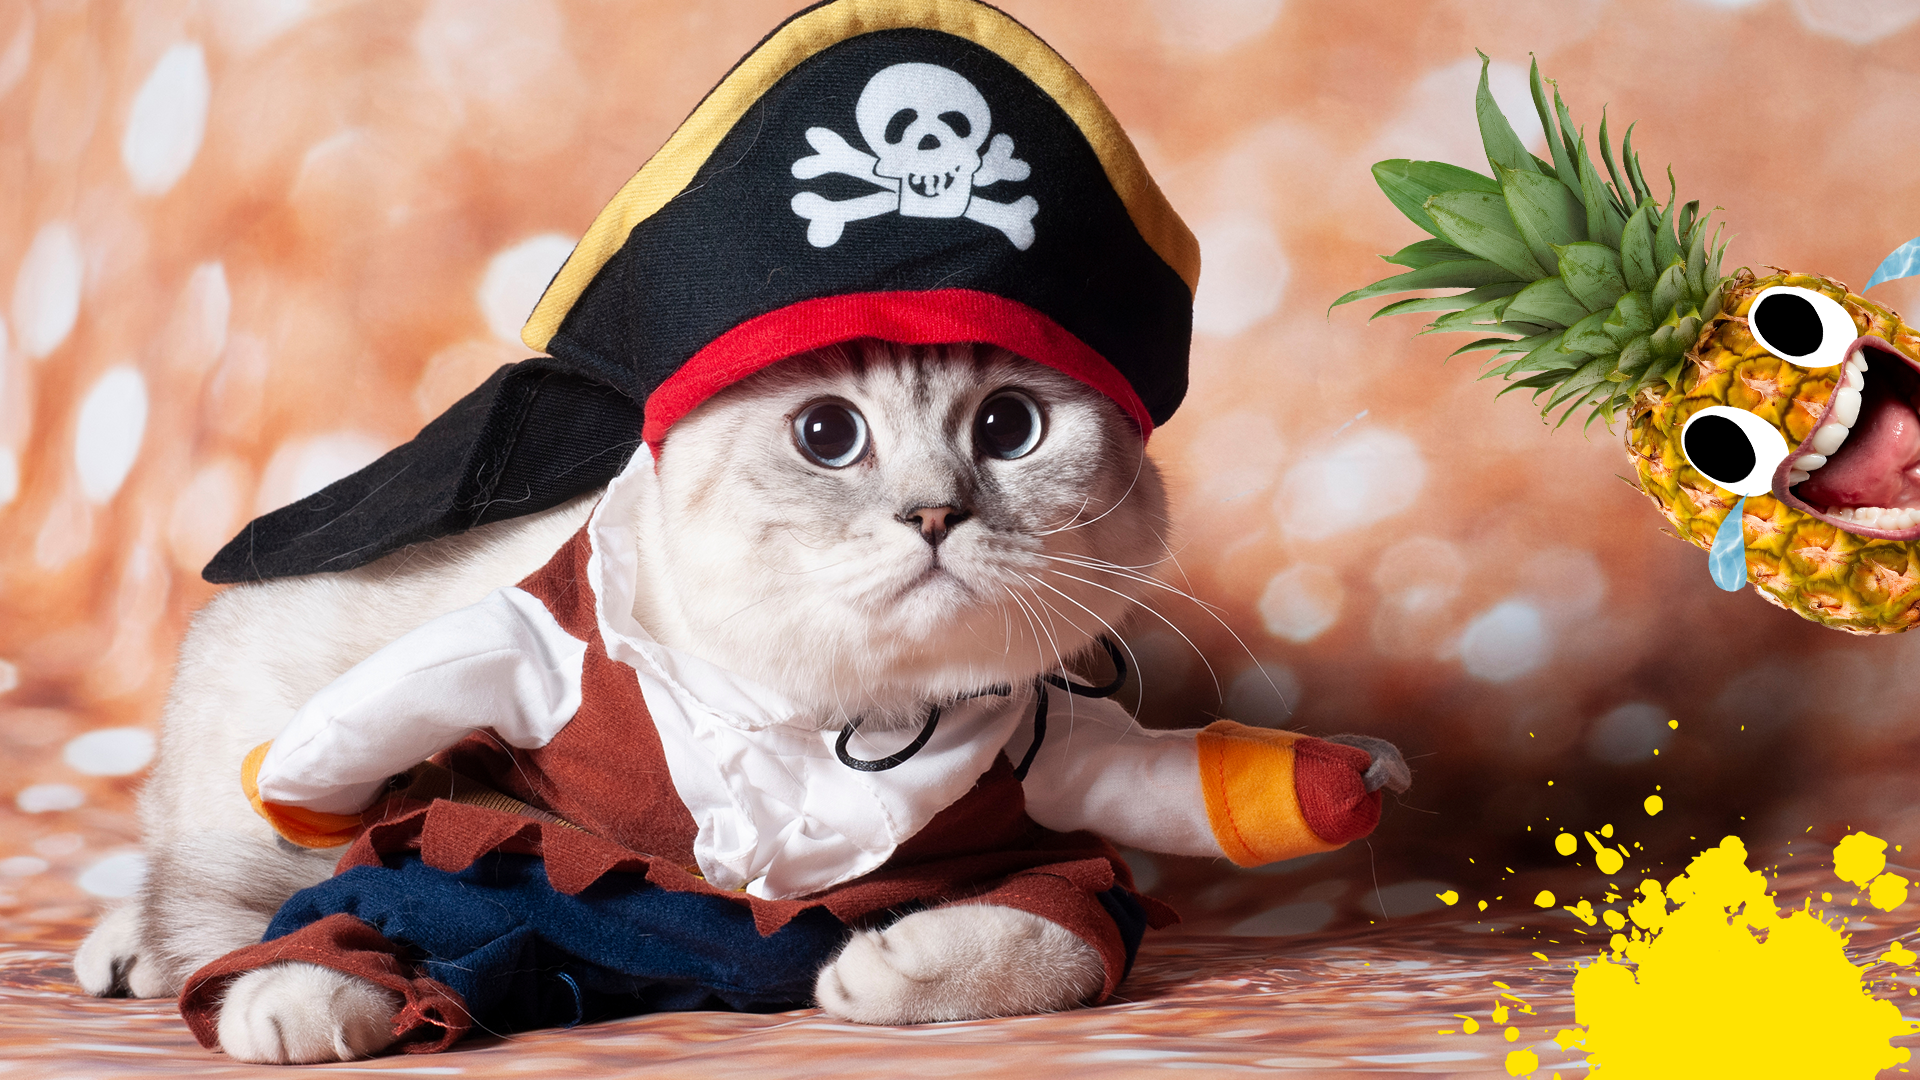 Cat in pirate costume